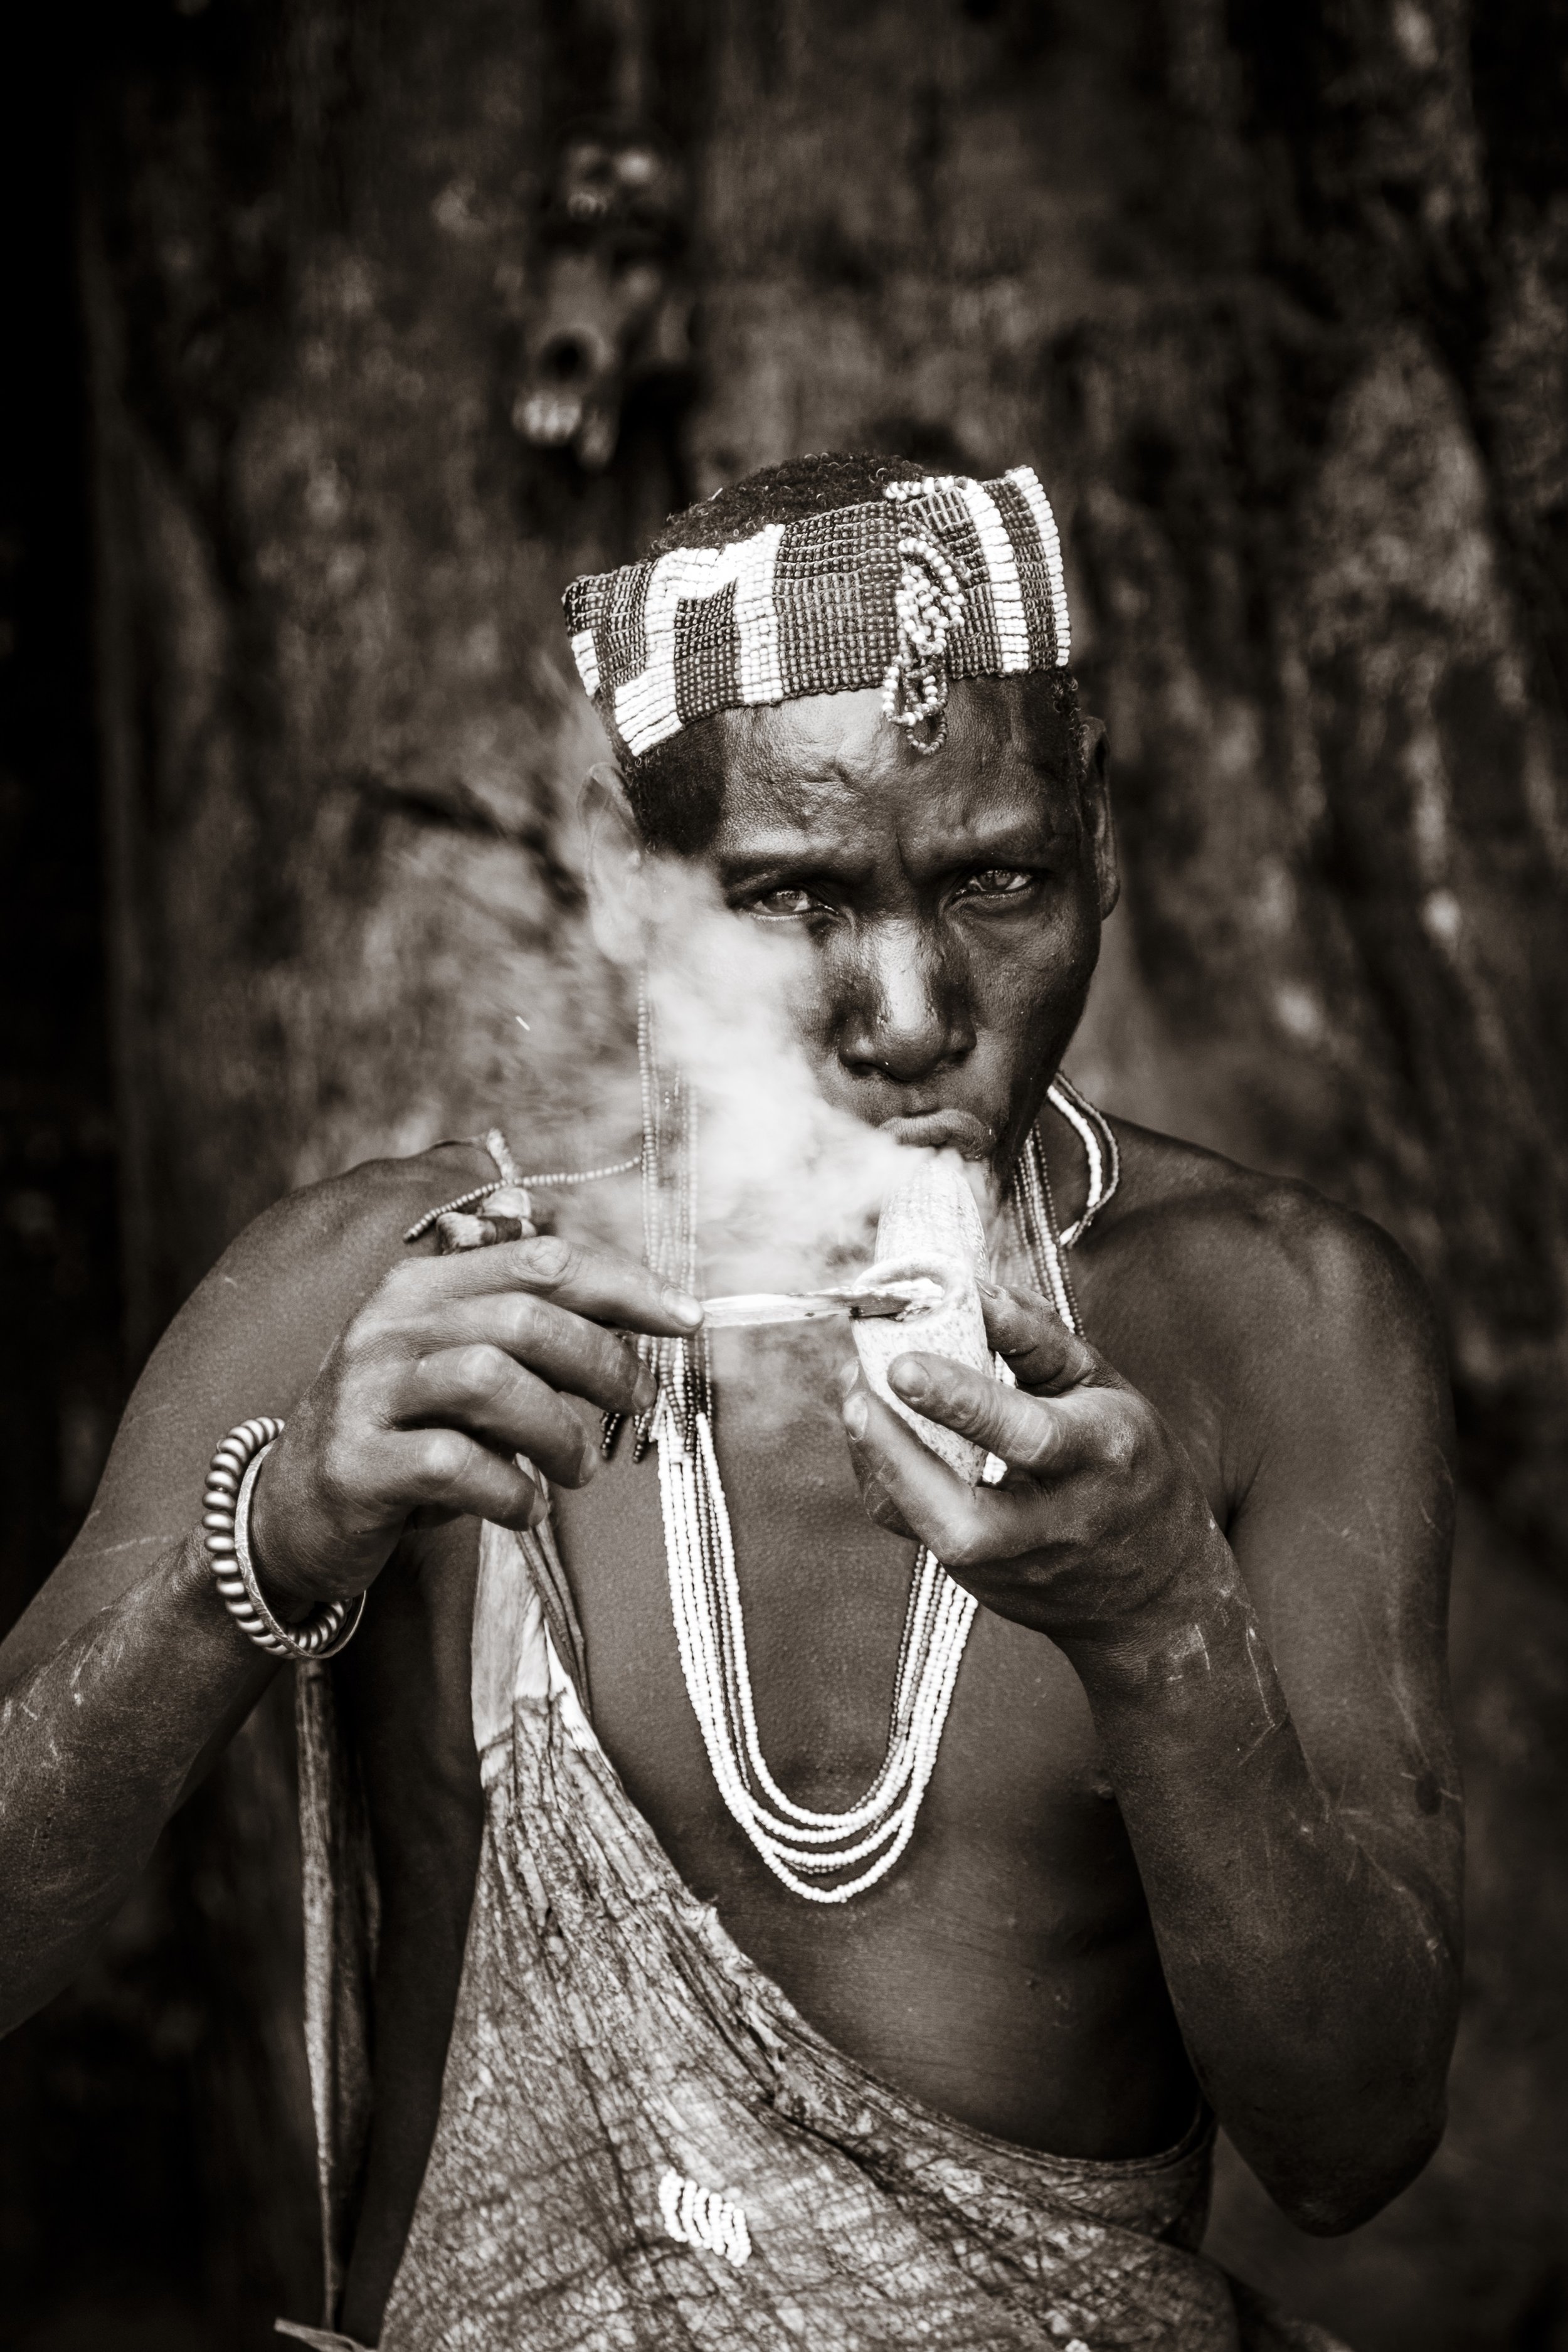 The Hadzabe Smoker from The Hadzabe of Tanzania series